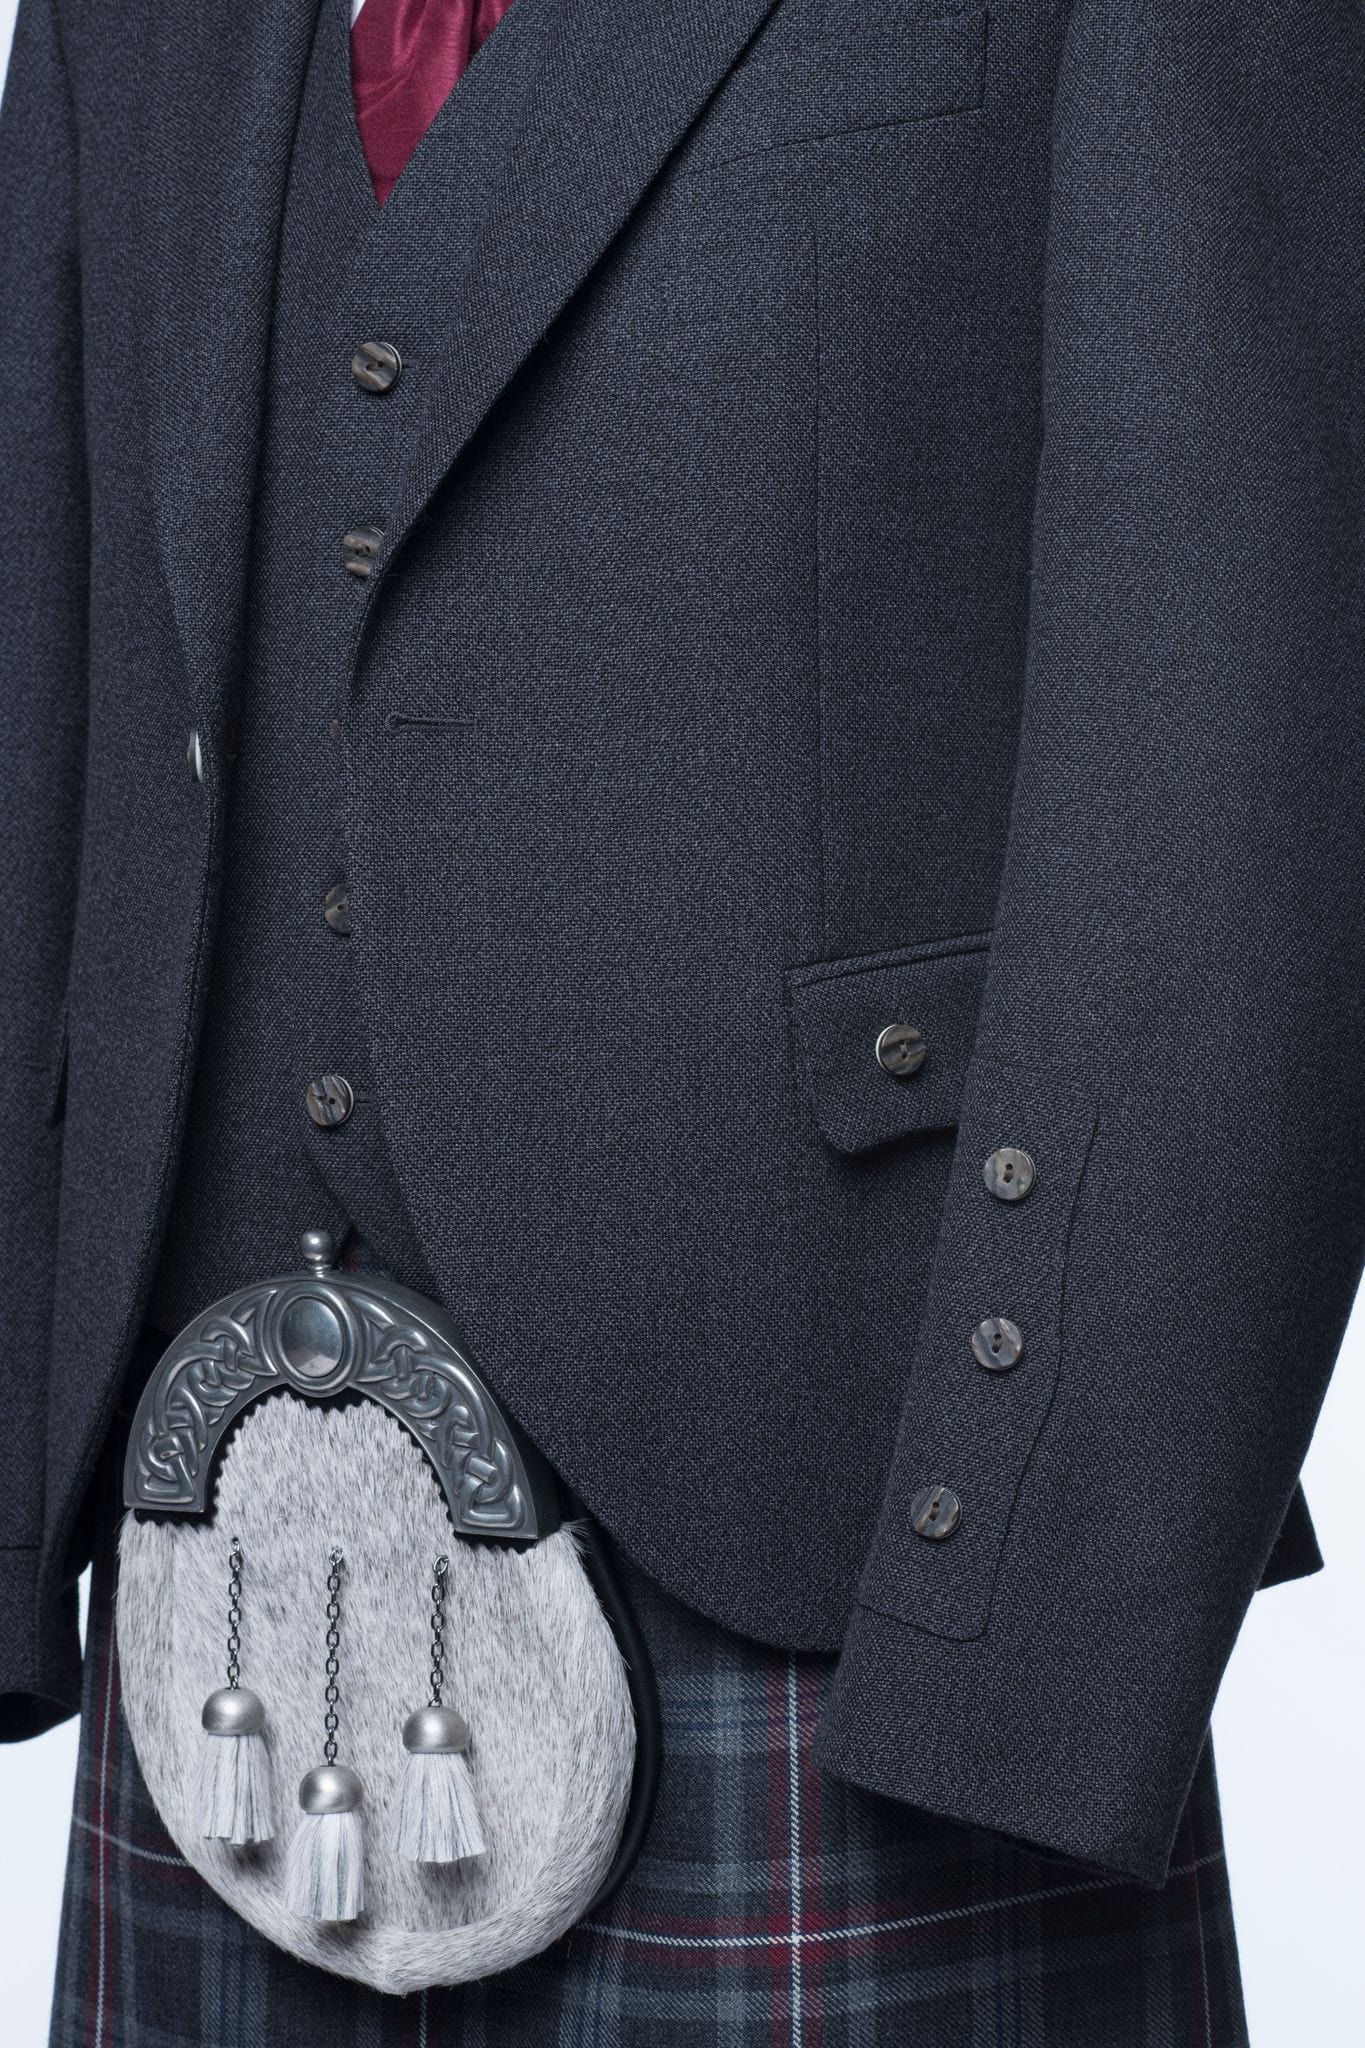 Oban Grey Tweed Kilt Jacket and Waistcoat - MacGregor and MacDuff